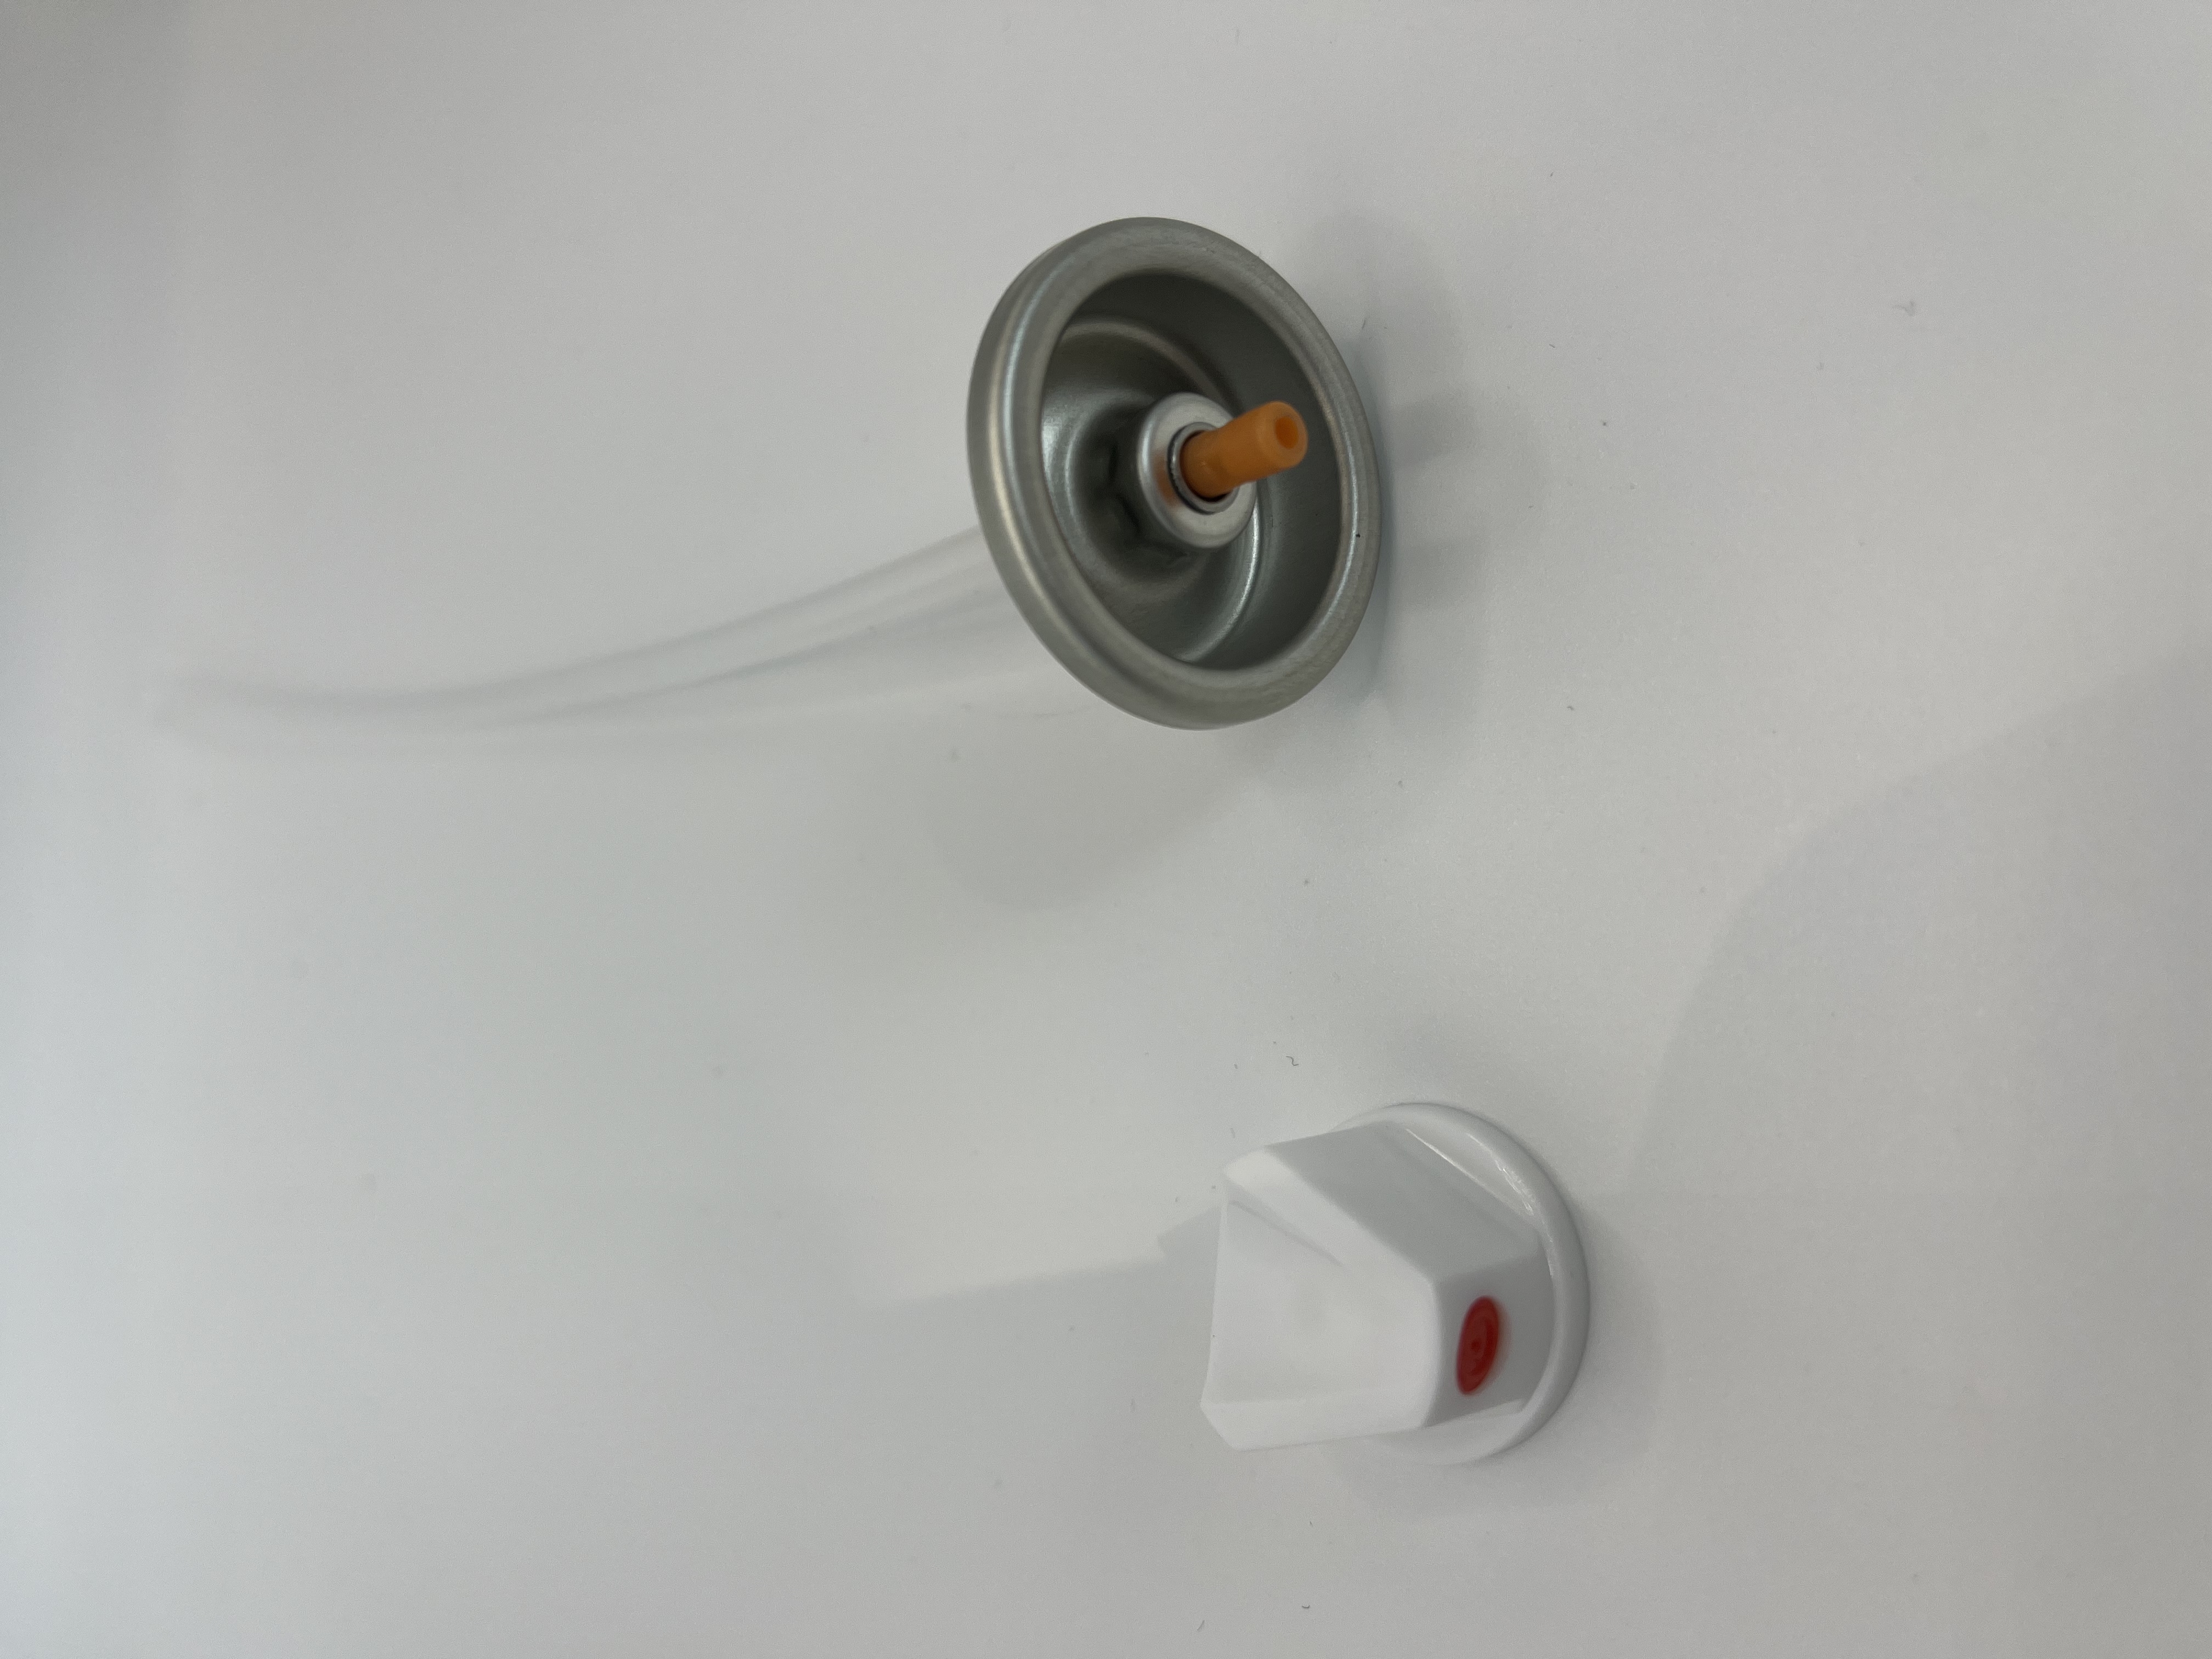 Válvula de pulverización de pintura eléctrica: operación sin esfuerzo con flujo ajustable